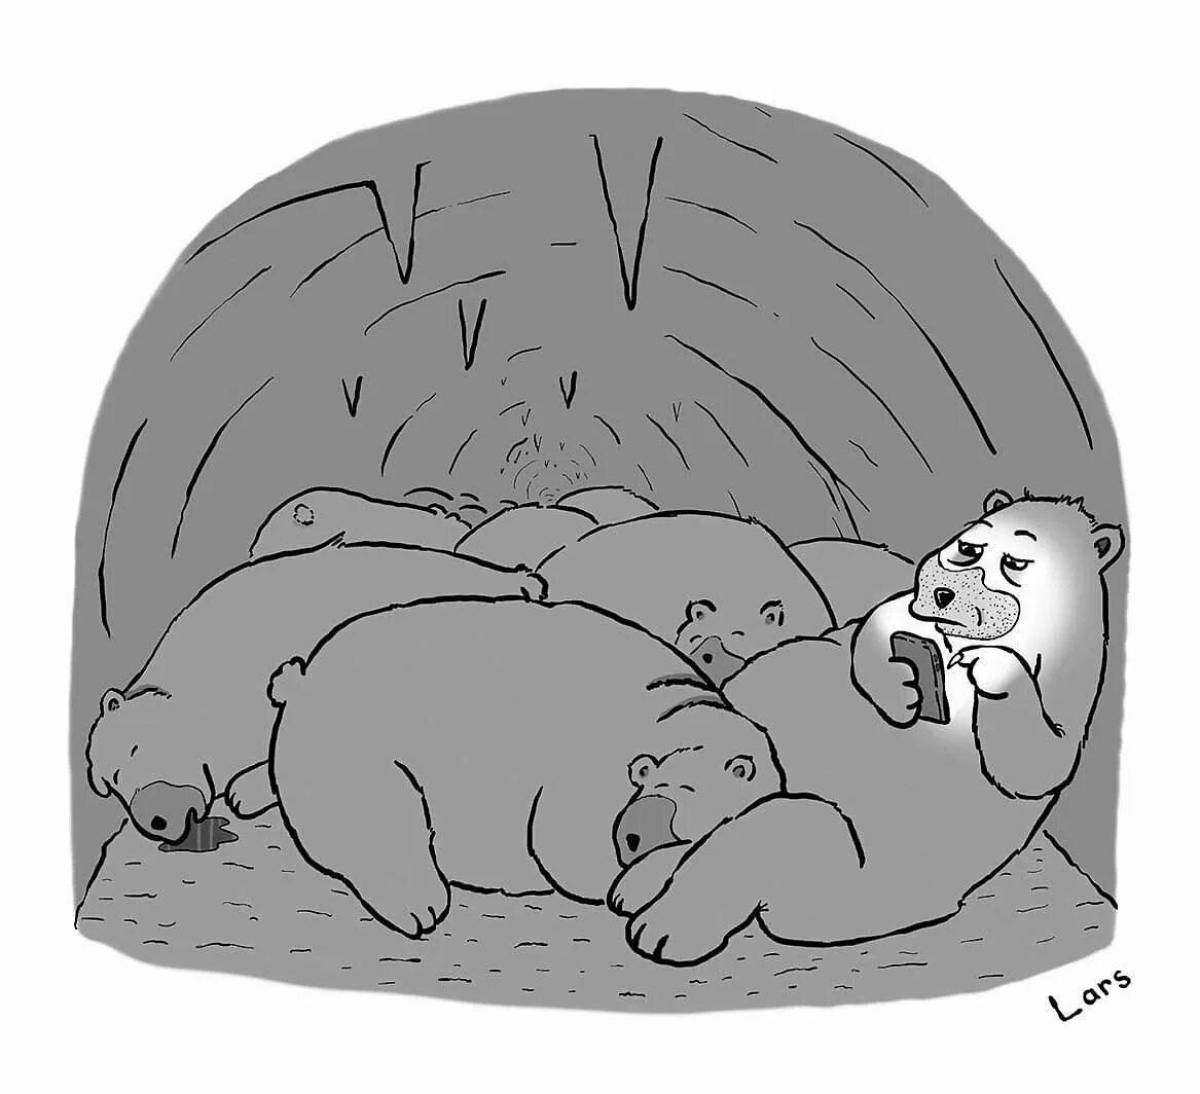 Little bear sleeps in a den